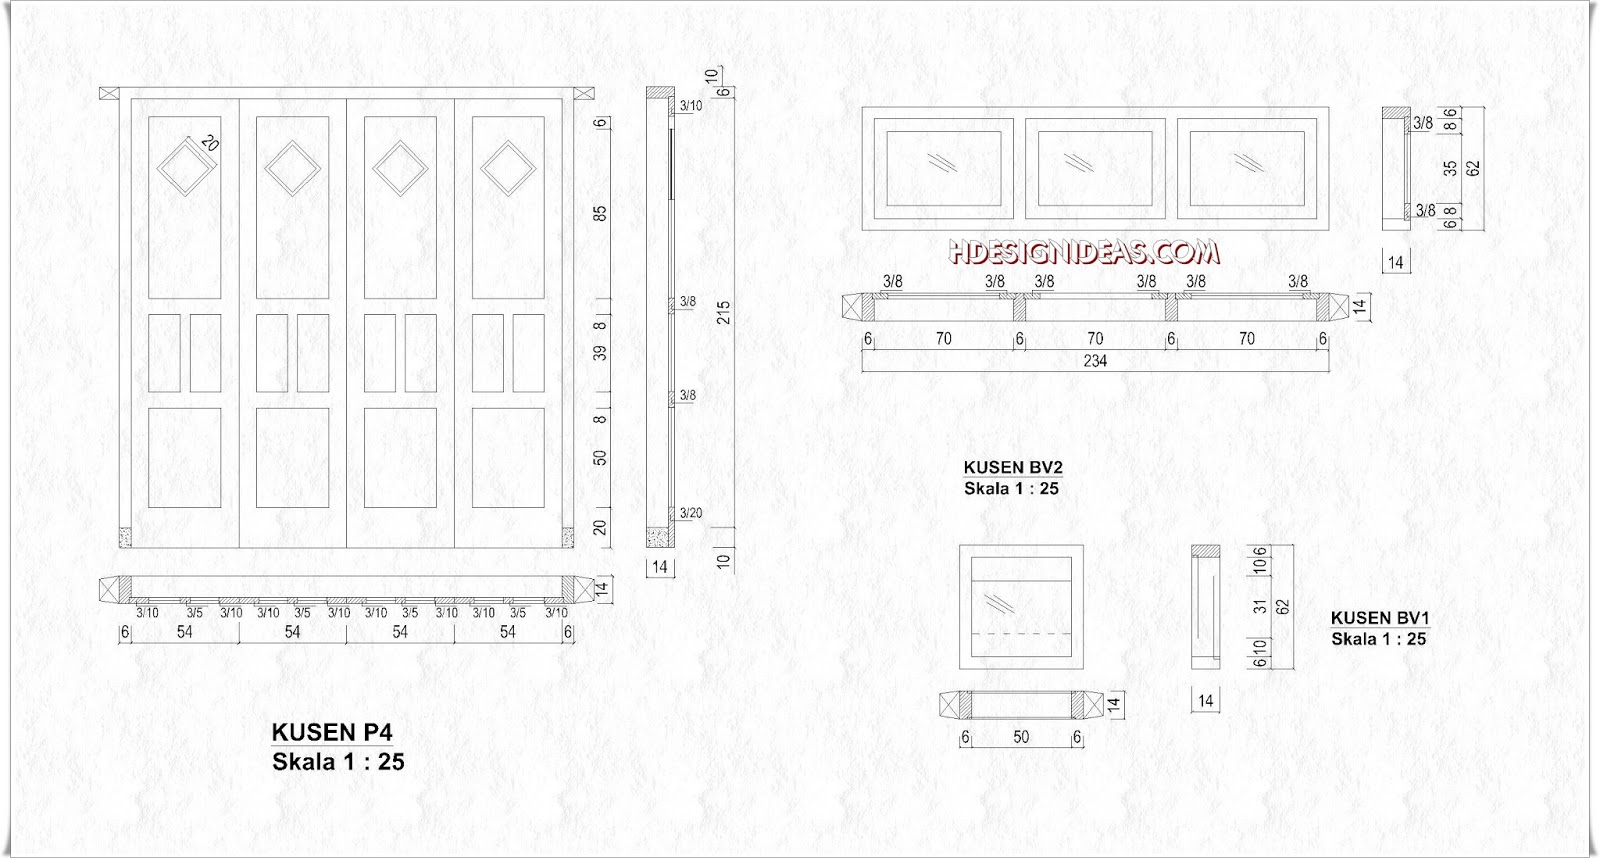 Denah Rumah Tinggal Ukuran 8 m x 8,5 m | Home Design and Ideas